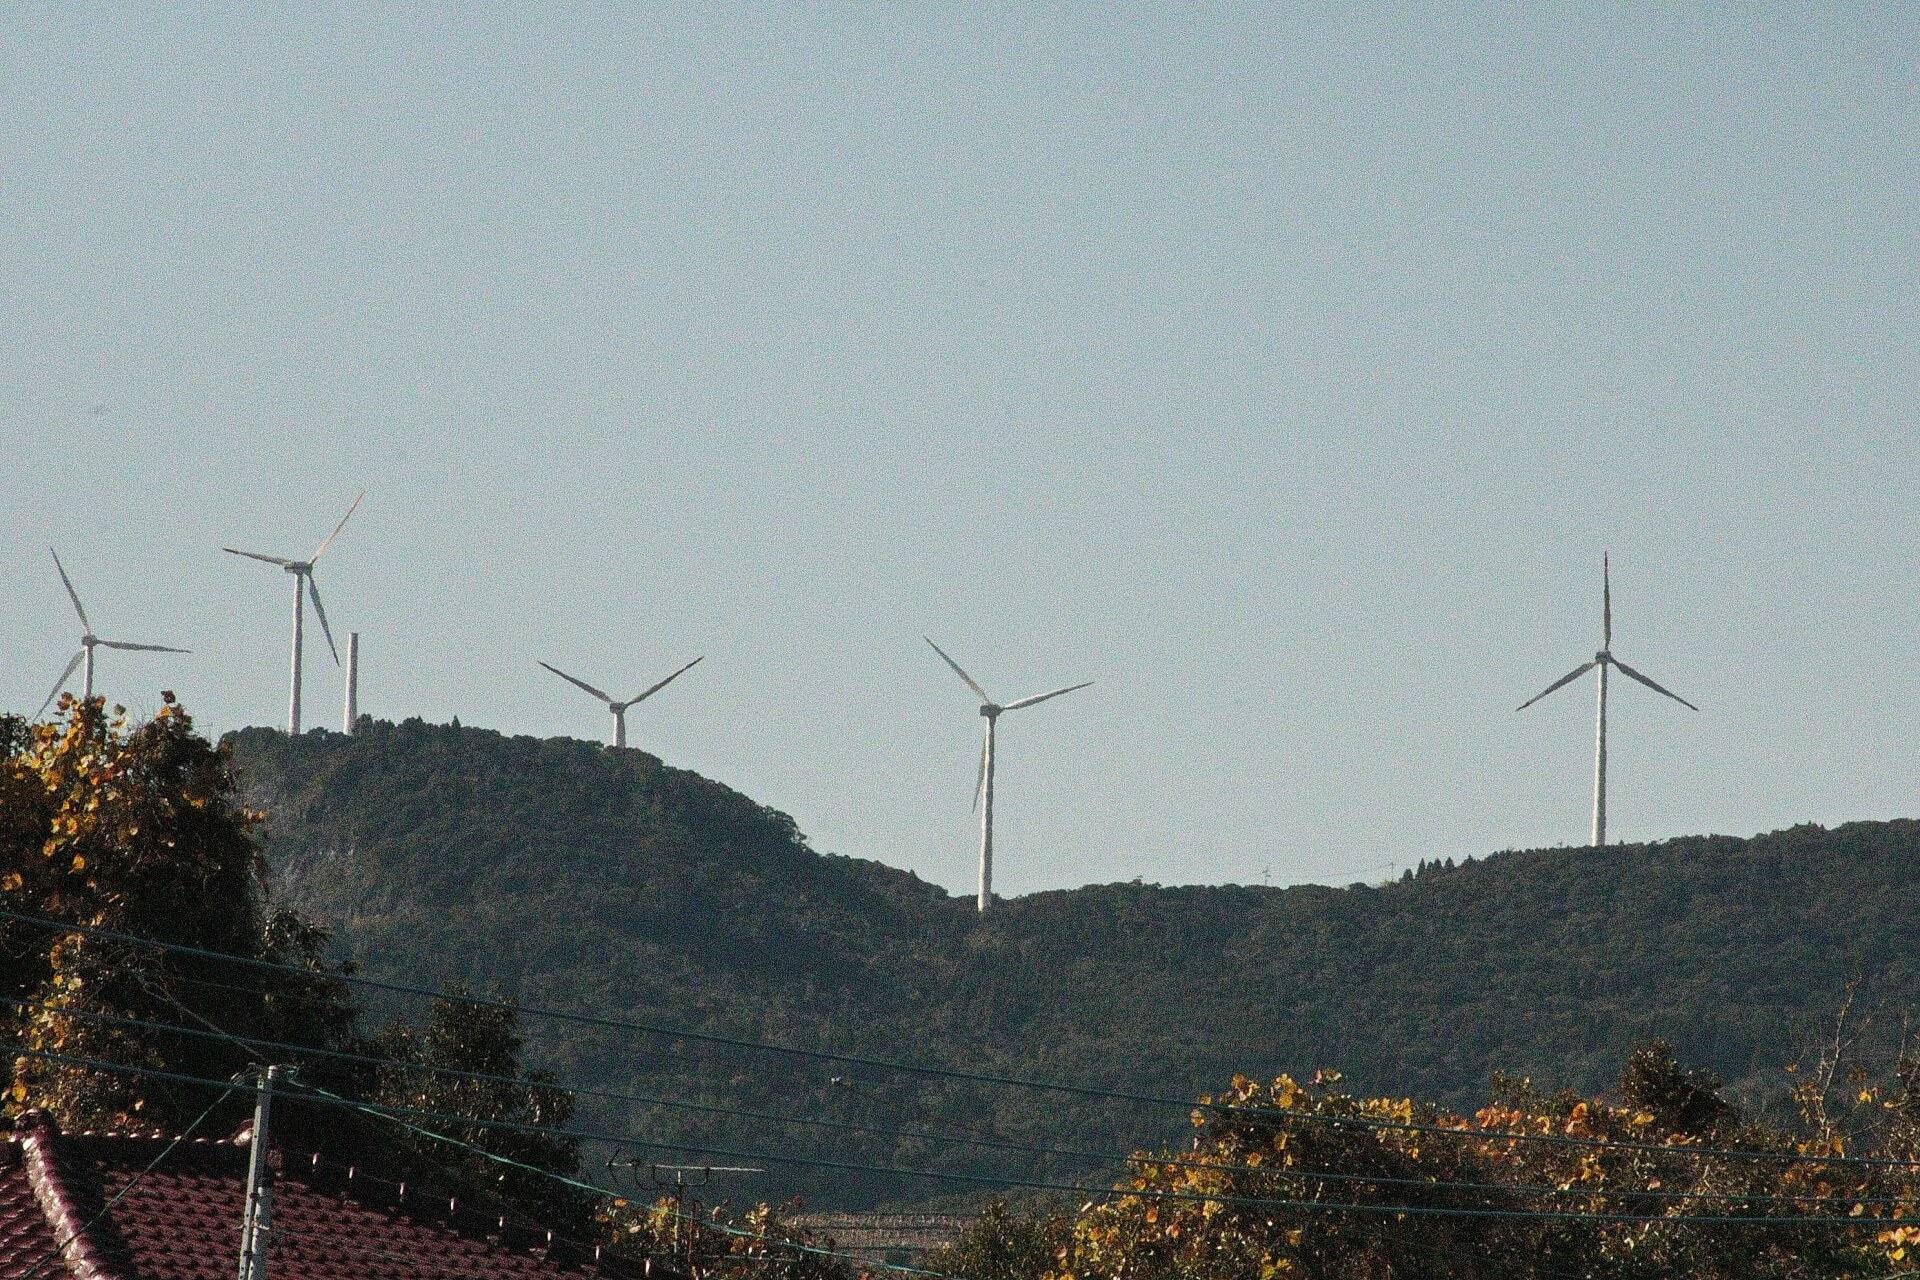 東の枕崎市側から見た、番屋風力発電所の風車群